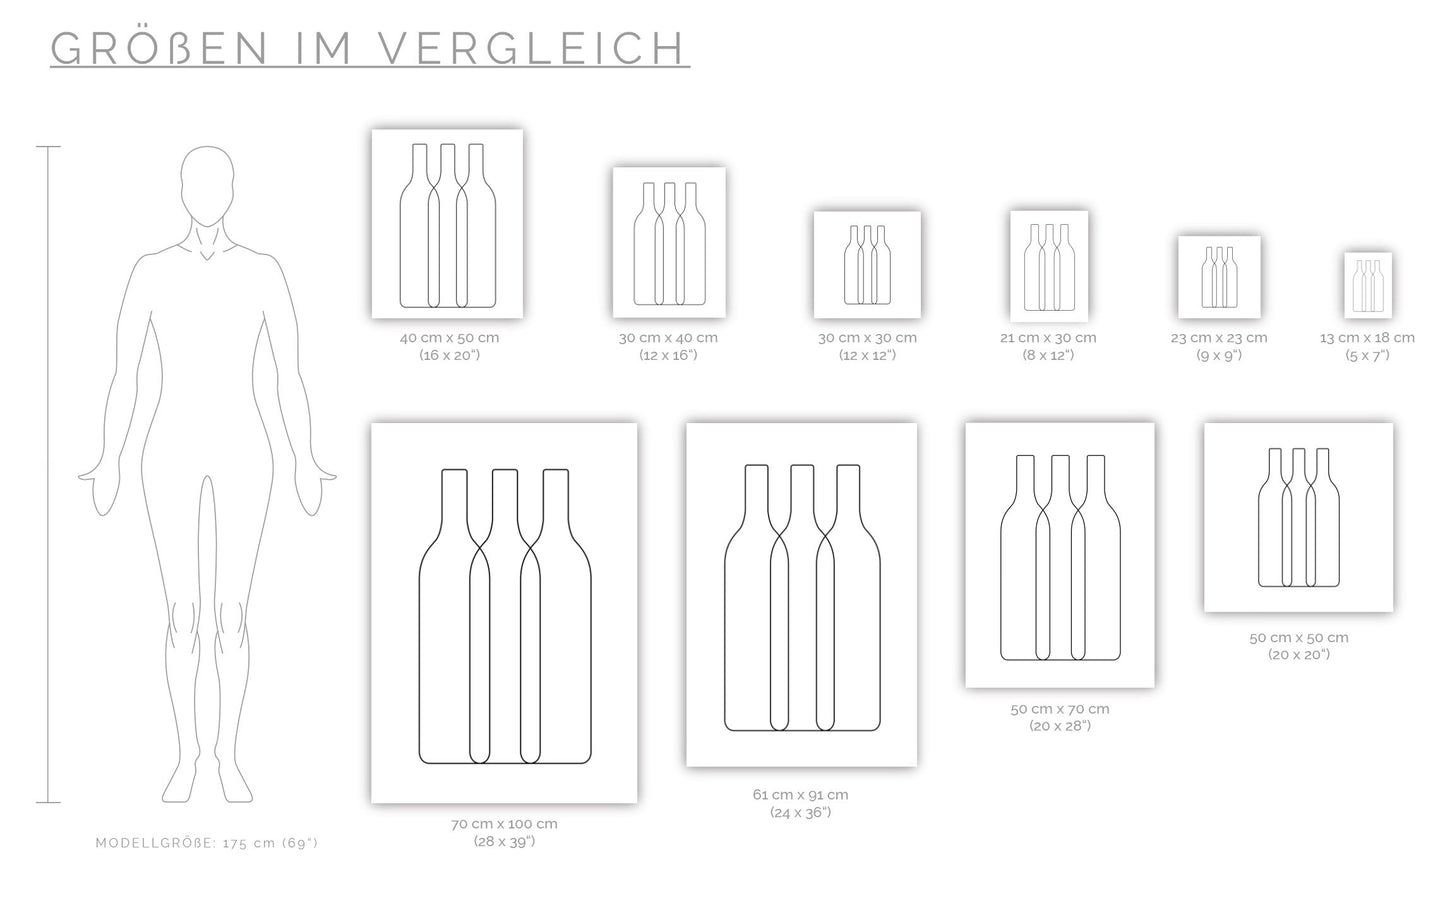 Poster Weinflaschen